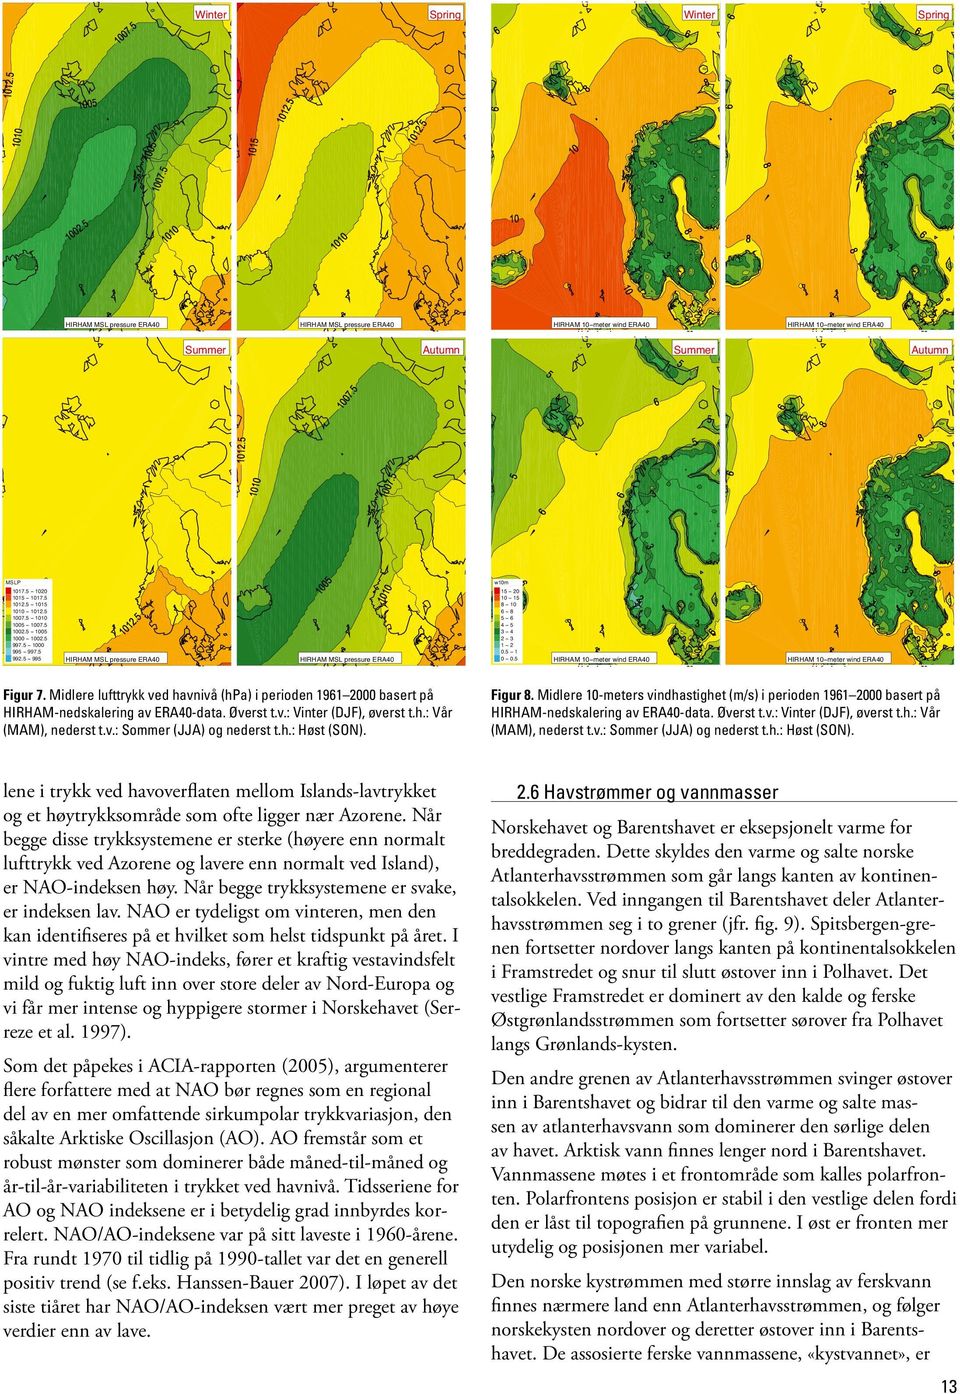 Midlere lufttrykk ved havnivå (hpa) i perioden 1961 2000 basert på HIRHAM-nedskalering av ERA40-data. Øverst t.v.: Vinter (DJF), øverst t.h.: Vår (MAM), nederst t.v.: Sommer (JJA) og nederst t.h.: Høst (SON).